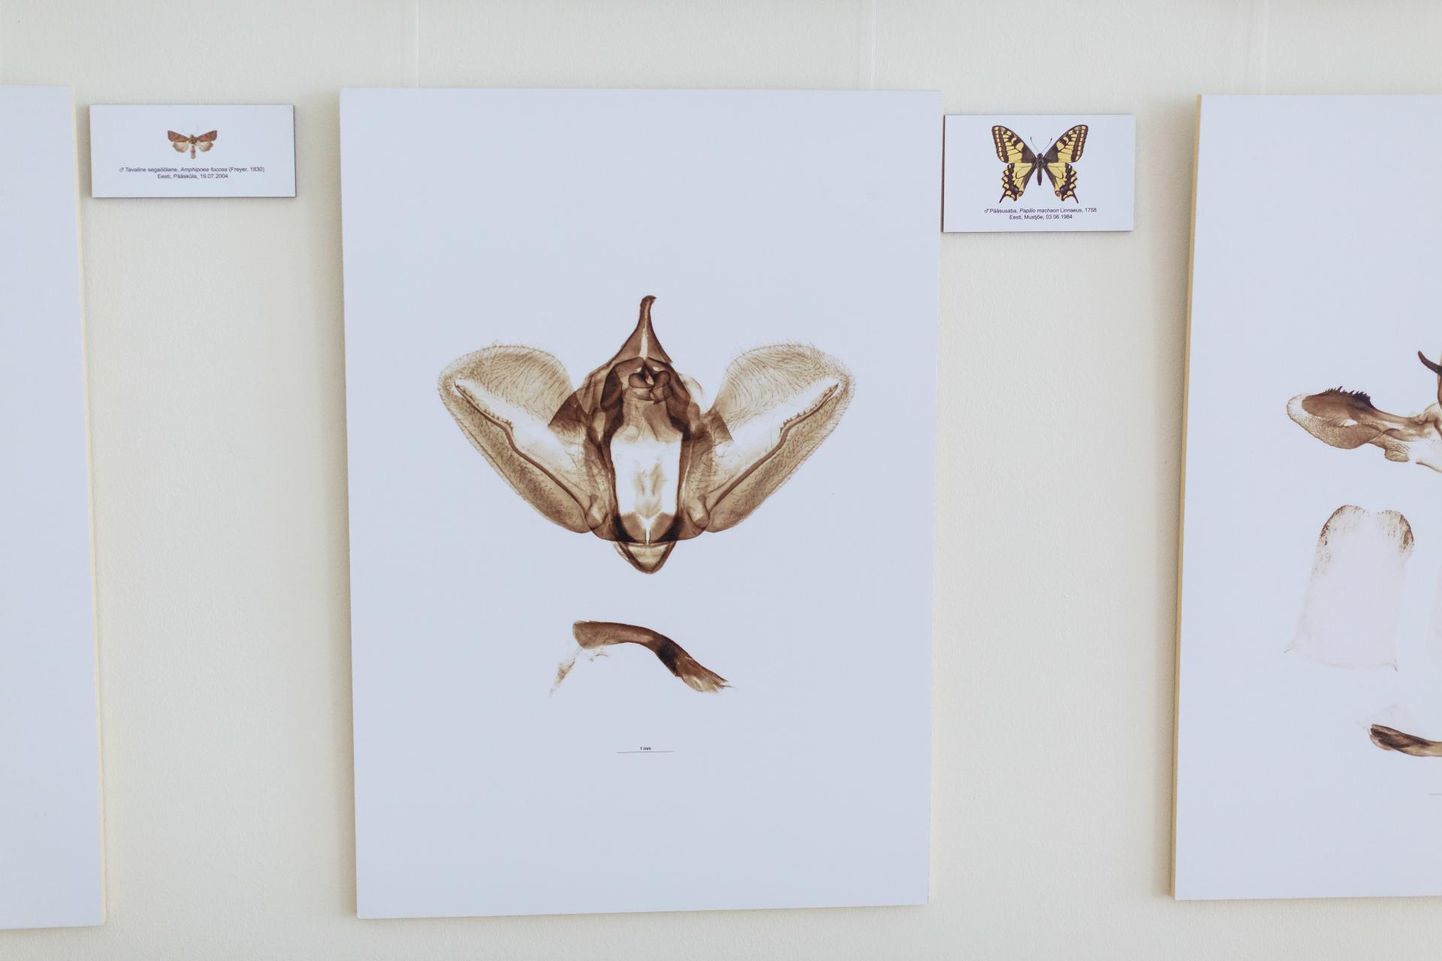 Näitus Liblikate armulukud Valga muuseumis. Näha saab mikroskoobi all tehtud fotosid liblikate armulukkudest ja –võtmetest ehk emas- ja isasliblikate genitaalidest. 